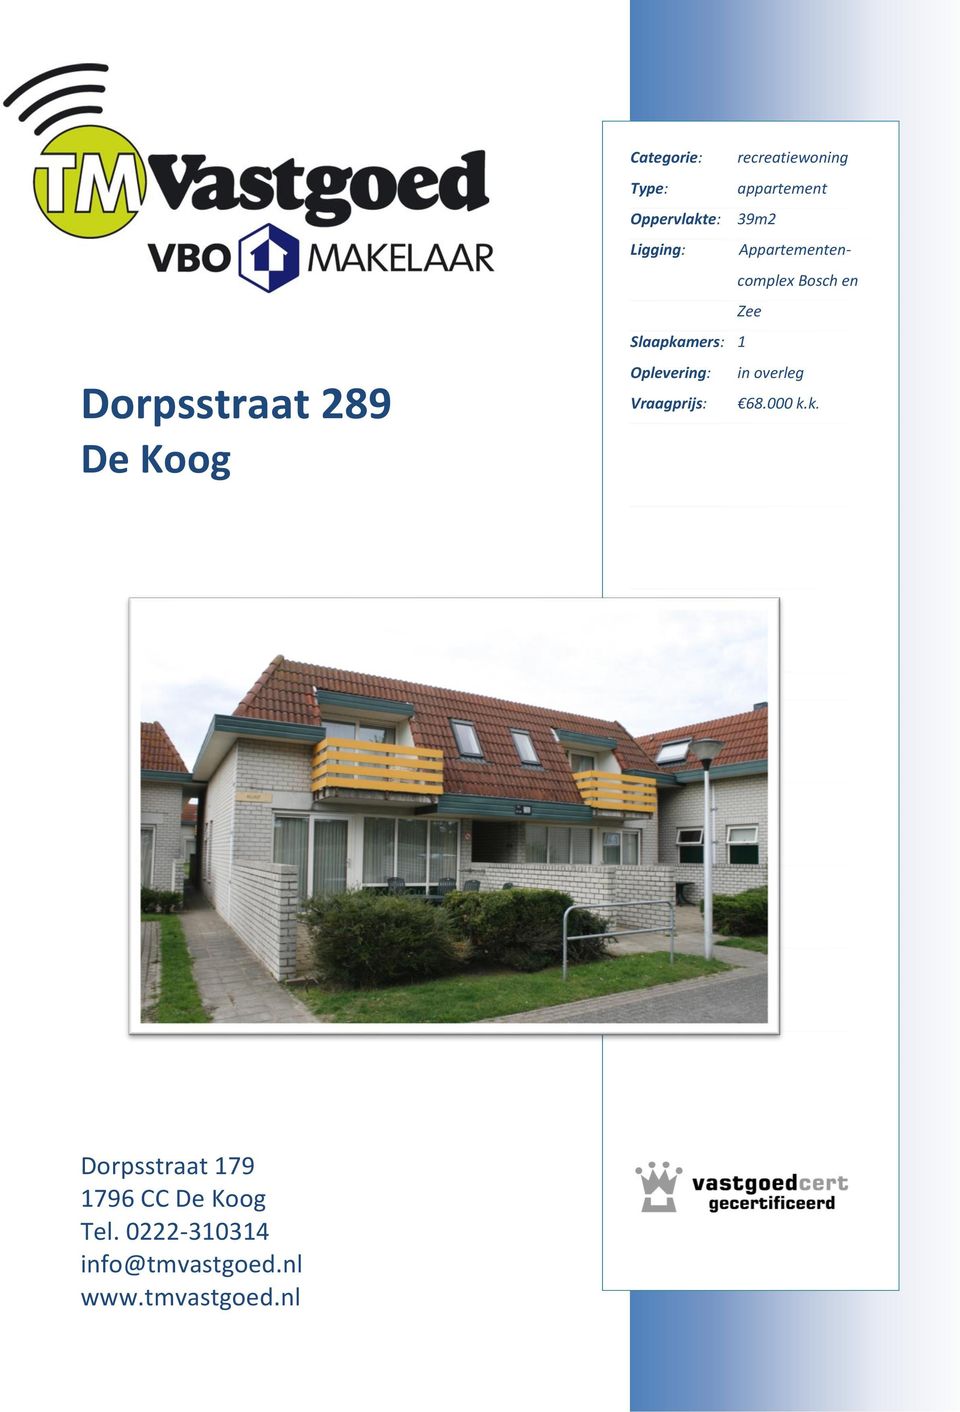 Slaapkamers: 1 Oplevering: in overleg Vraagprijs: 68.000 k.k. Dorpsstraat 179 1796 CC De Koog Tel.